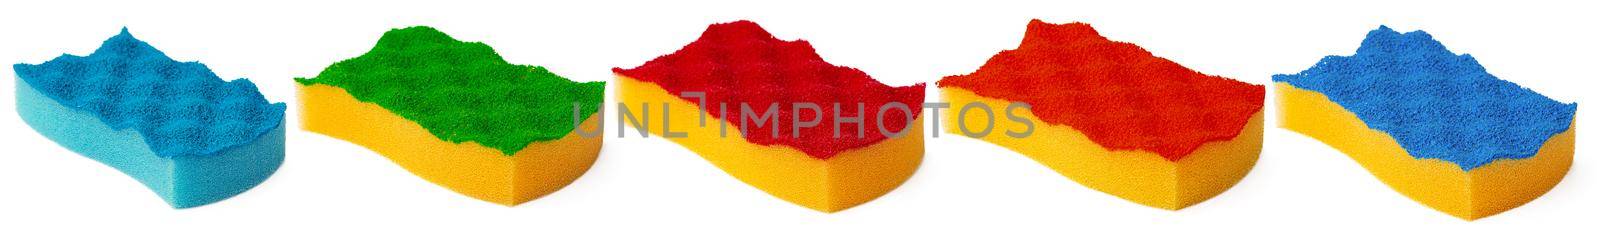 Kitchen sponge for dish washing isolated on white background, close up